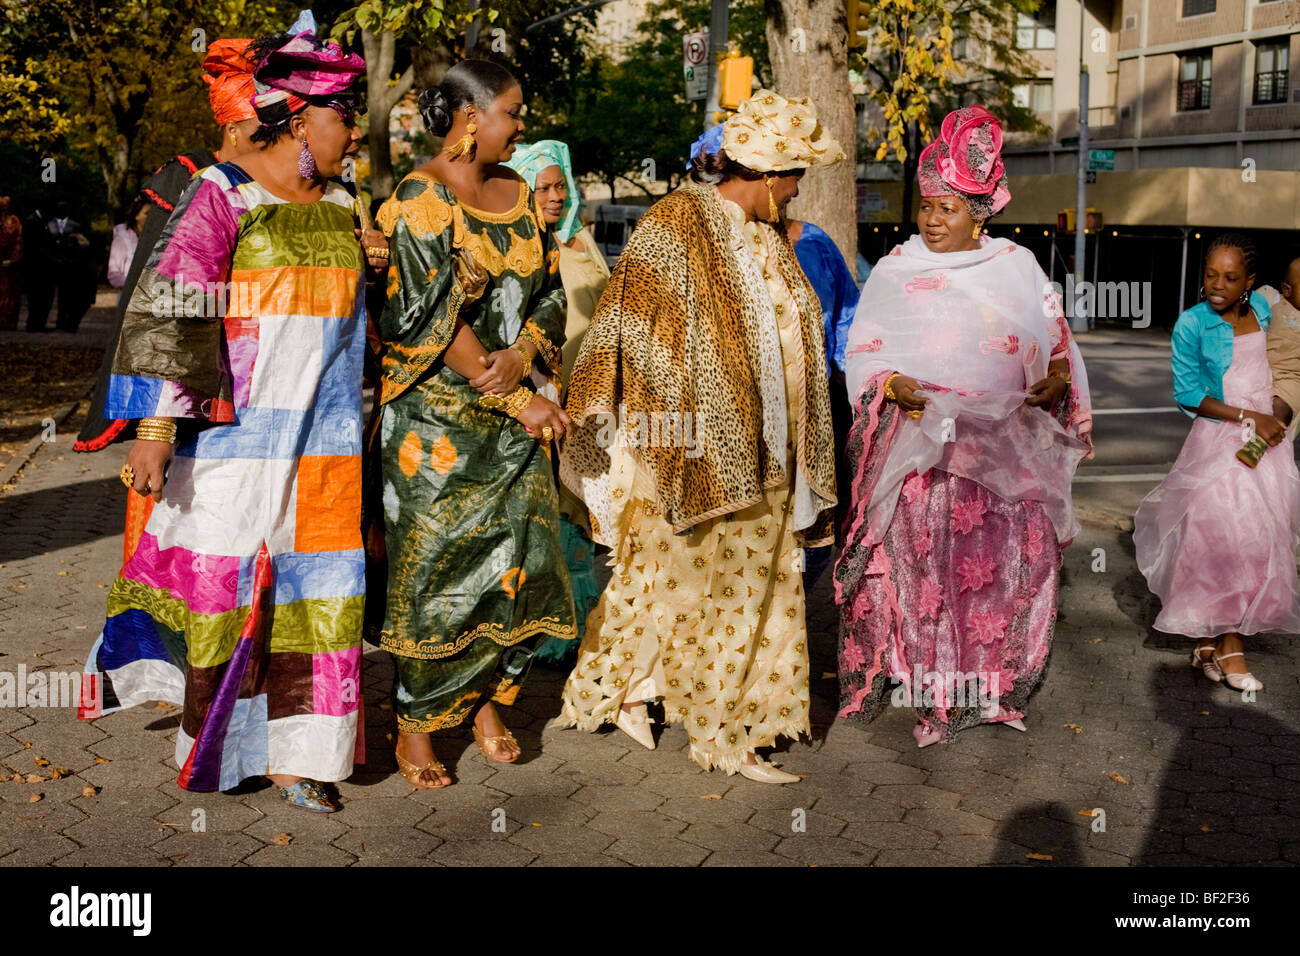 Les femmes de race noire robes colorées dimanche meilleur, Harlem, Manhattan, New York City Banque D'Images